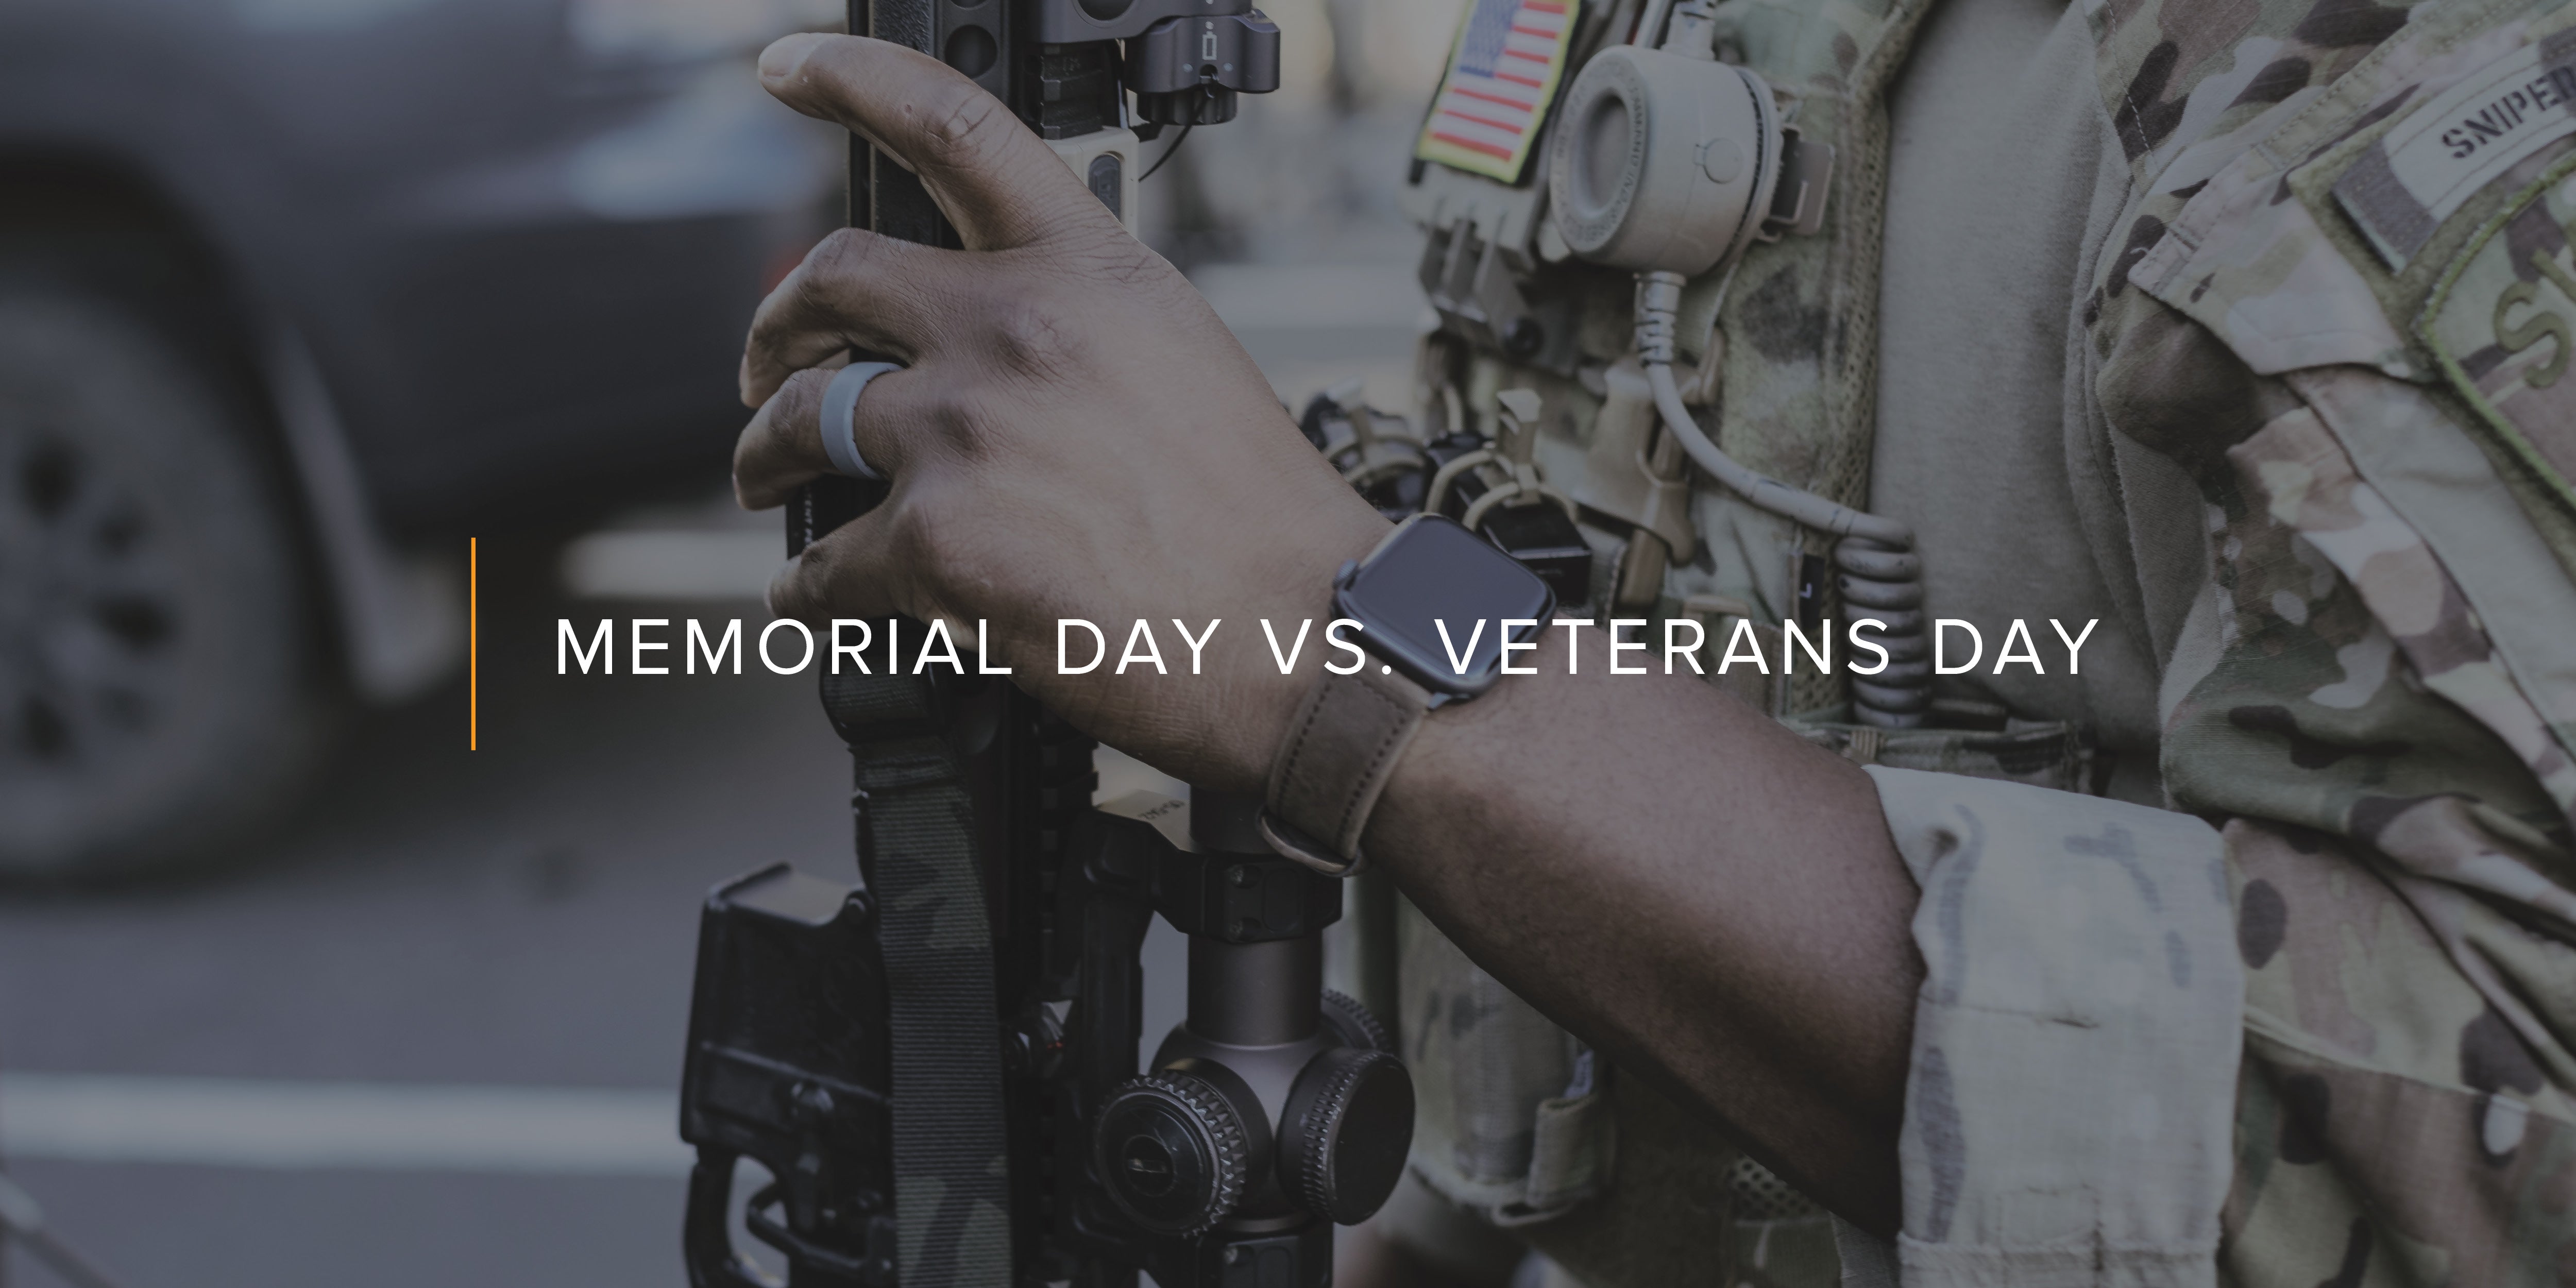 Memorial Day vs. Veterans Day